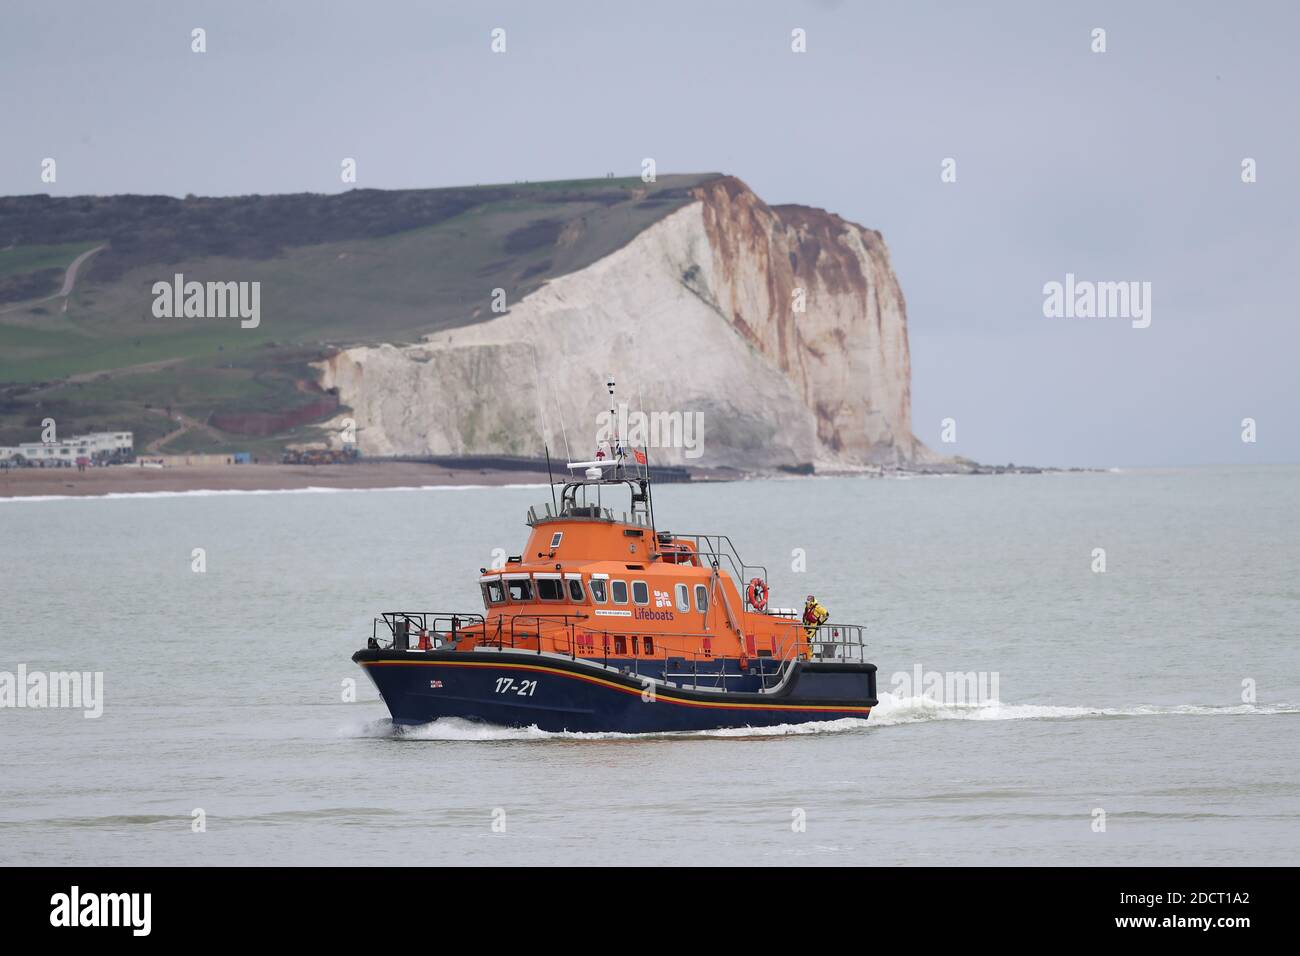 RNLI RETTUNGSBOOT 17 21 kehrt nach der Suche nach zwei Besatzungsmitgliedern der Joanna C, einem Jakobsschiff, das gestern etwa drei Seemeilen vor der Küste von Sussex ein Notsignal ausstrahlte, in den Hafen von Newhaven zurück. Stockfoto